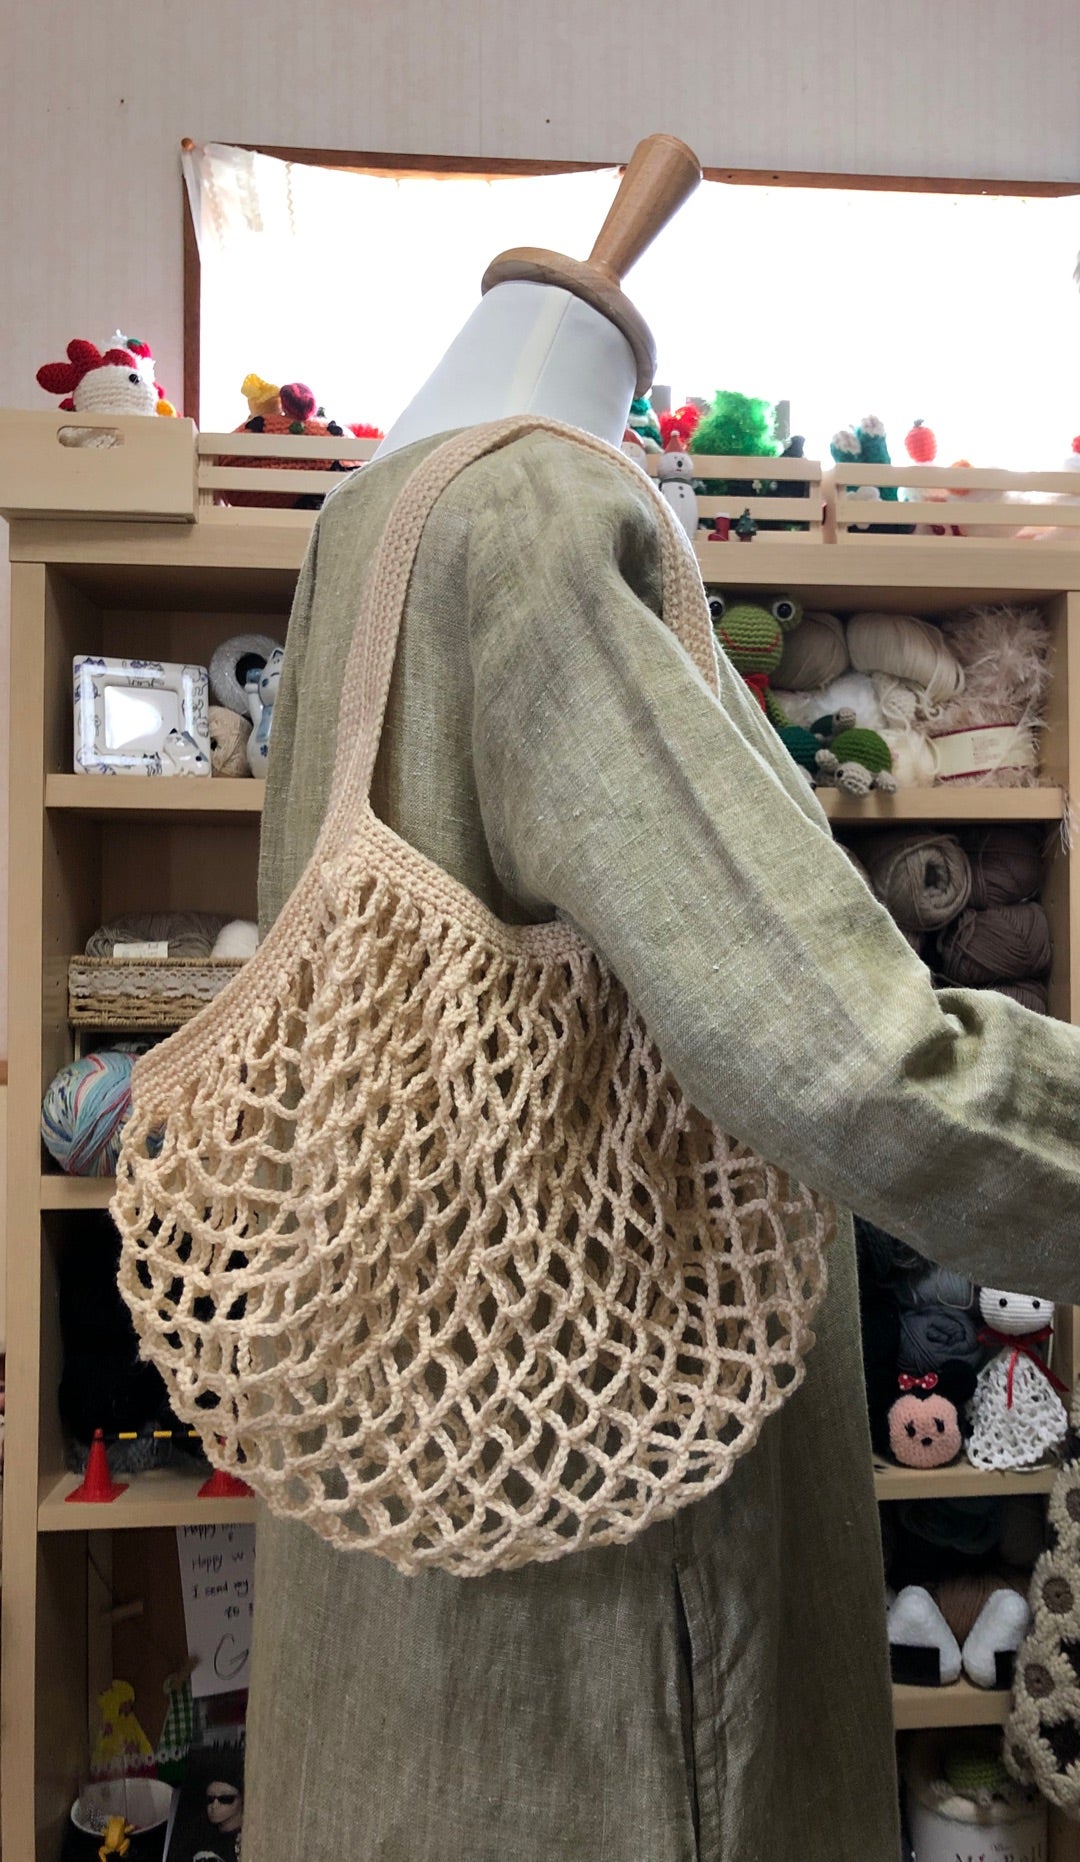 ピッコロ2玉でつくるネット編みのエコバッグ 豊川市編み物教室 手編み准師範の編み物ブログ ままちゃん